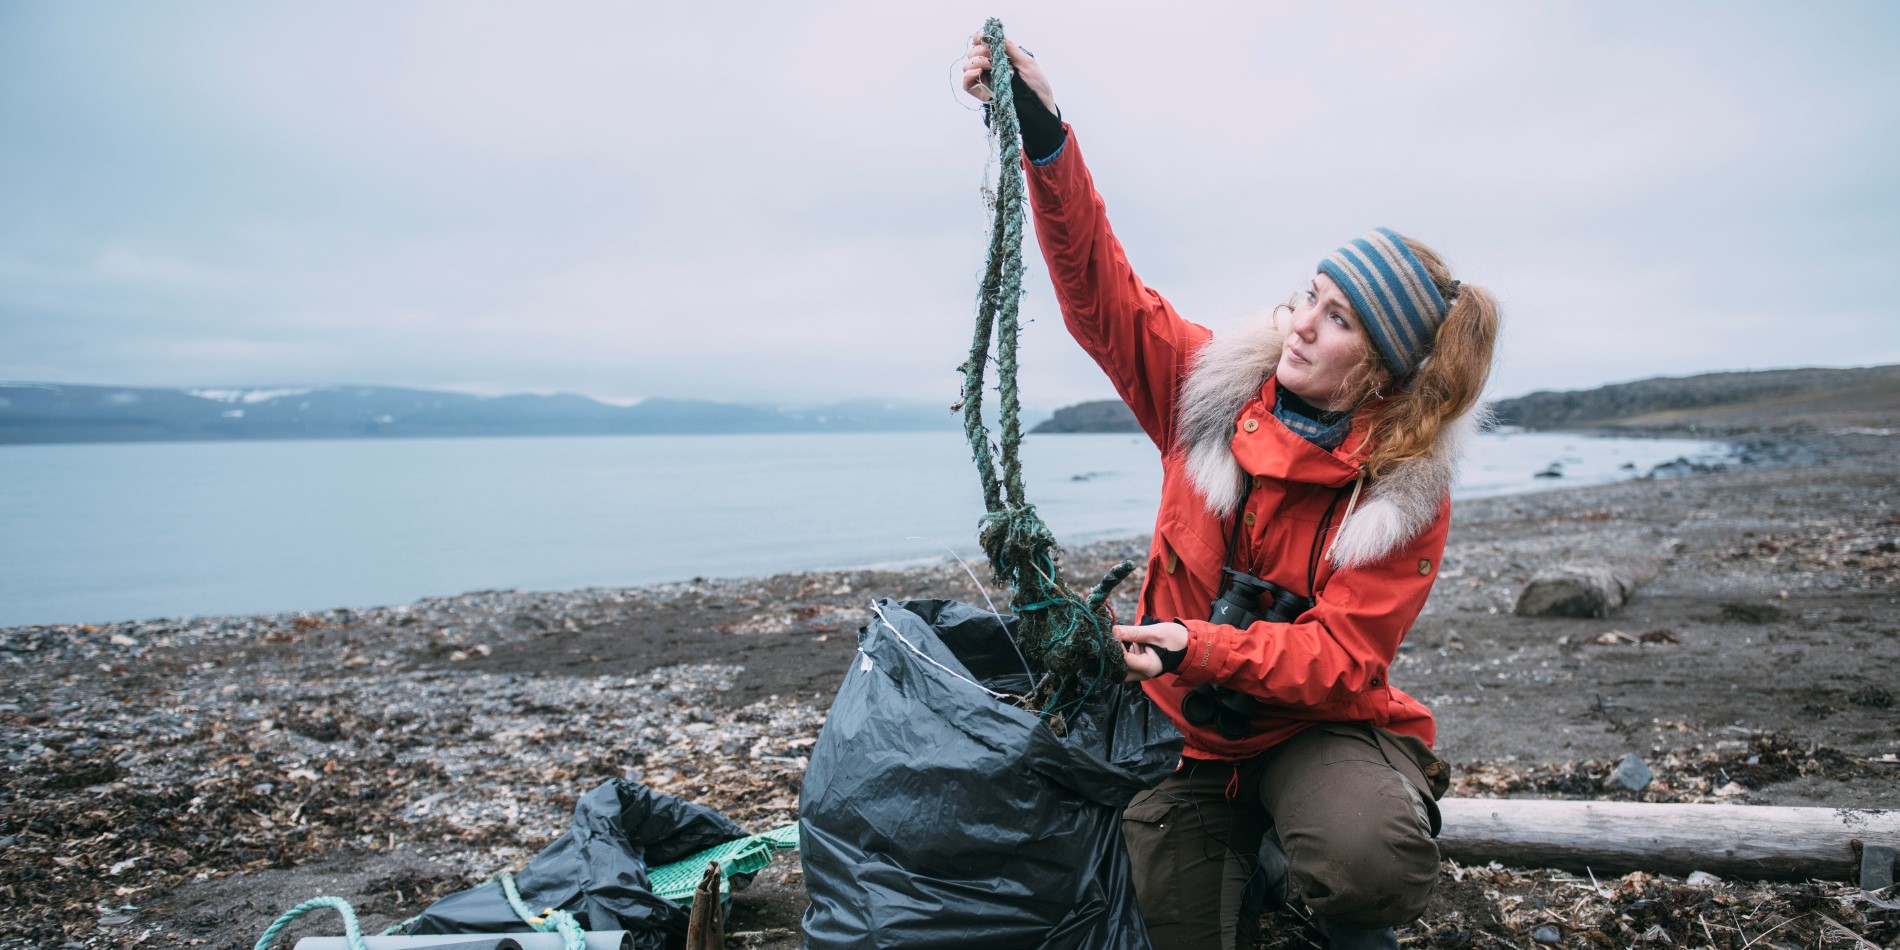 Biolog og ekspedisjonsleder Helga Bårdsdatter Kristiansen er på en strand full av søppel, hvor hun rydder opp